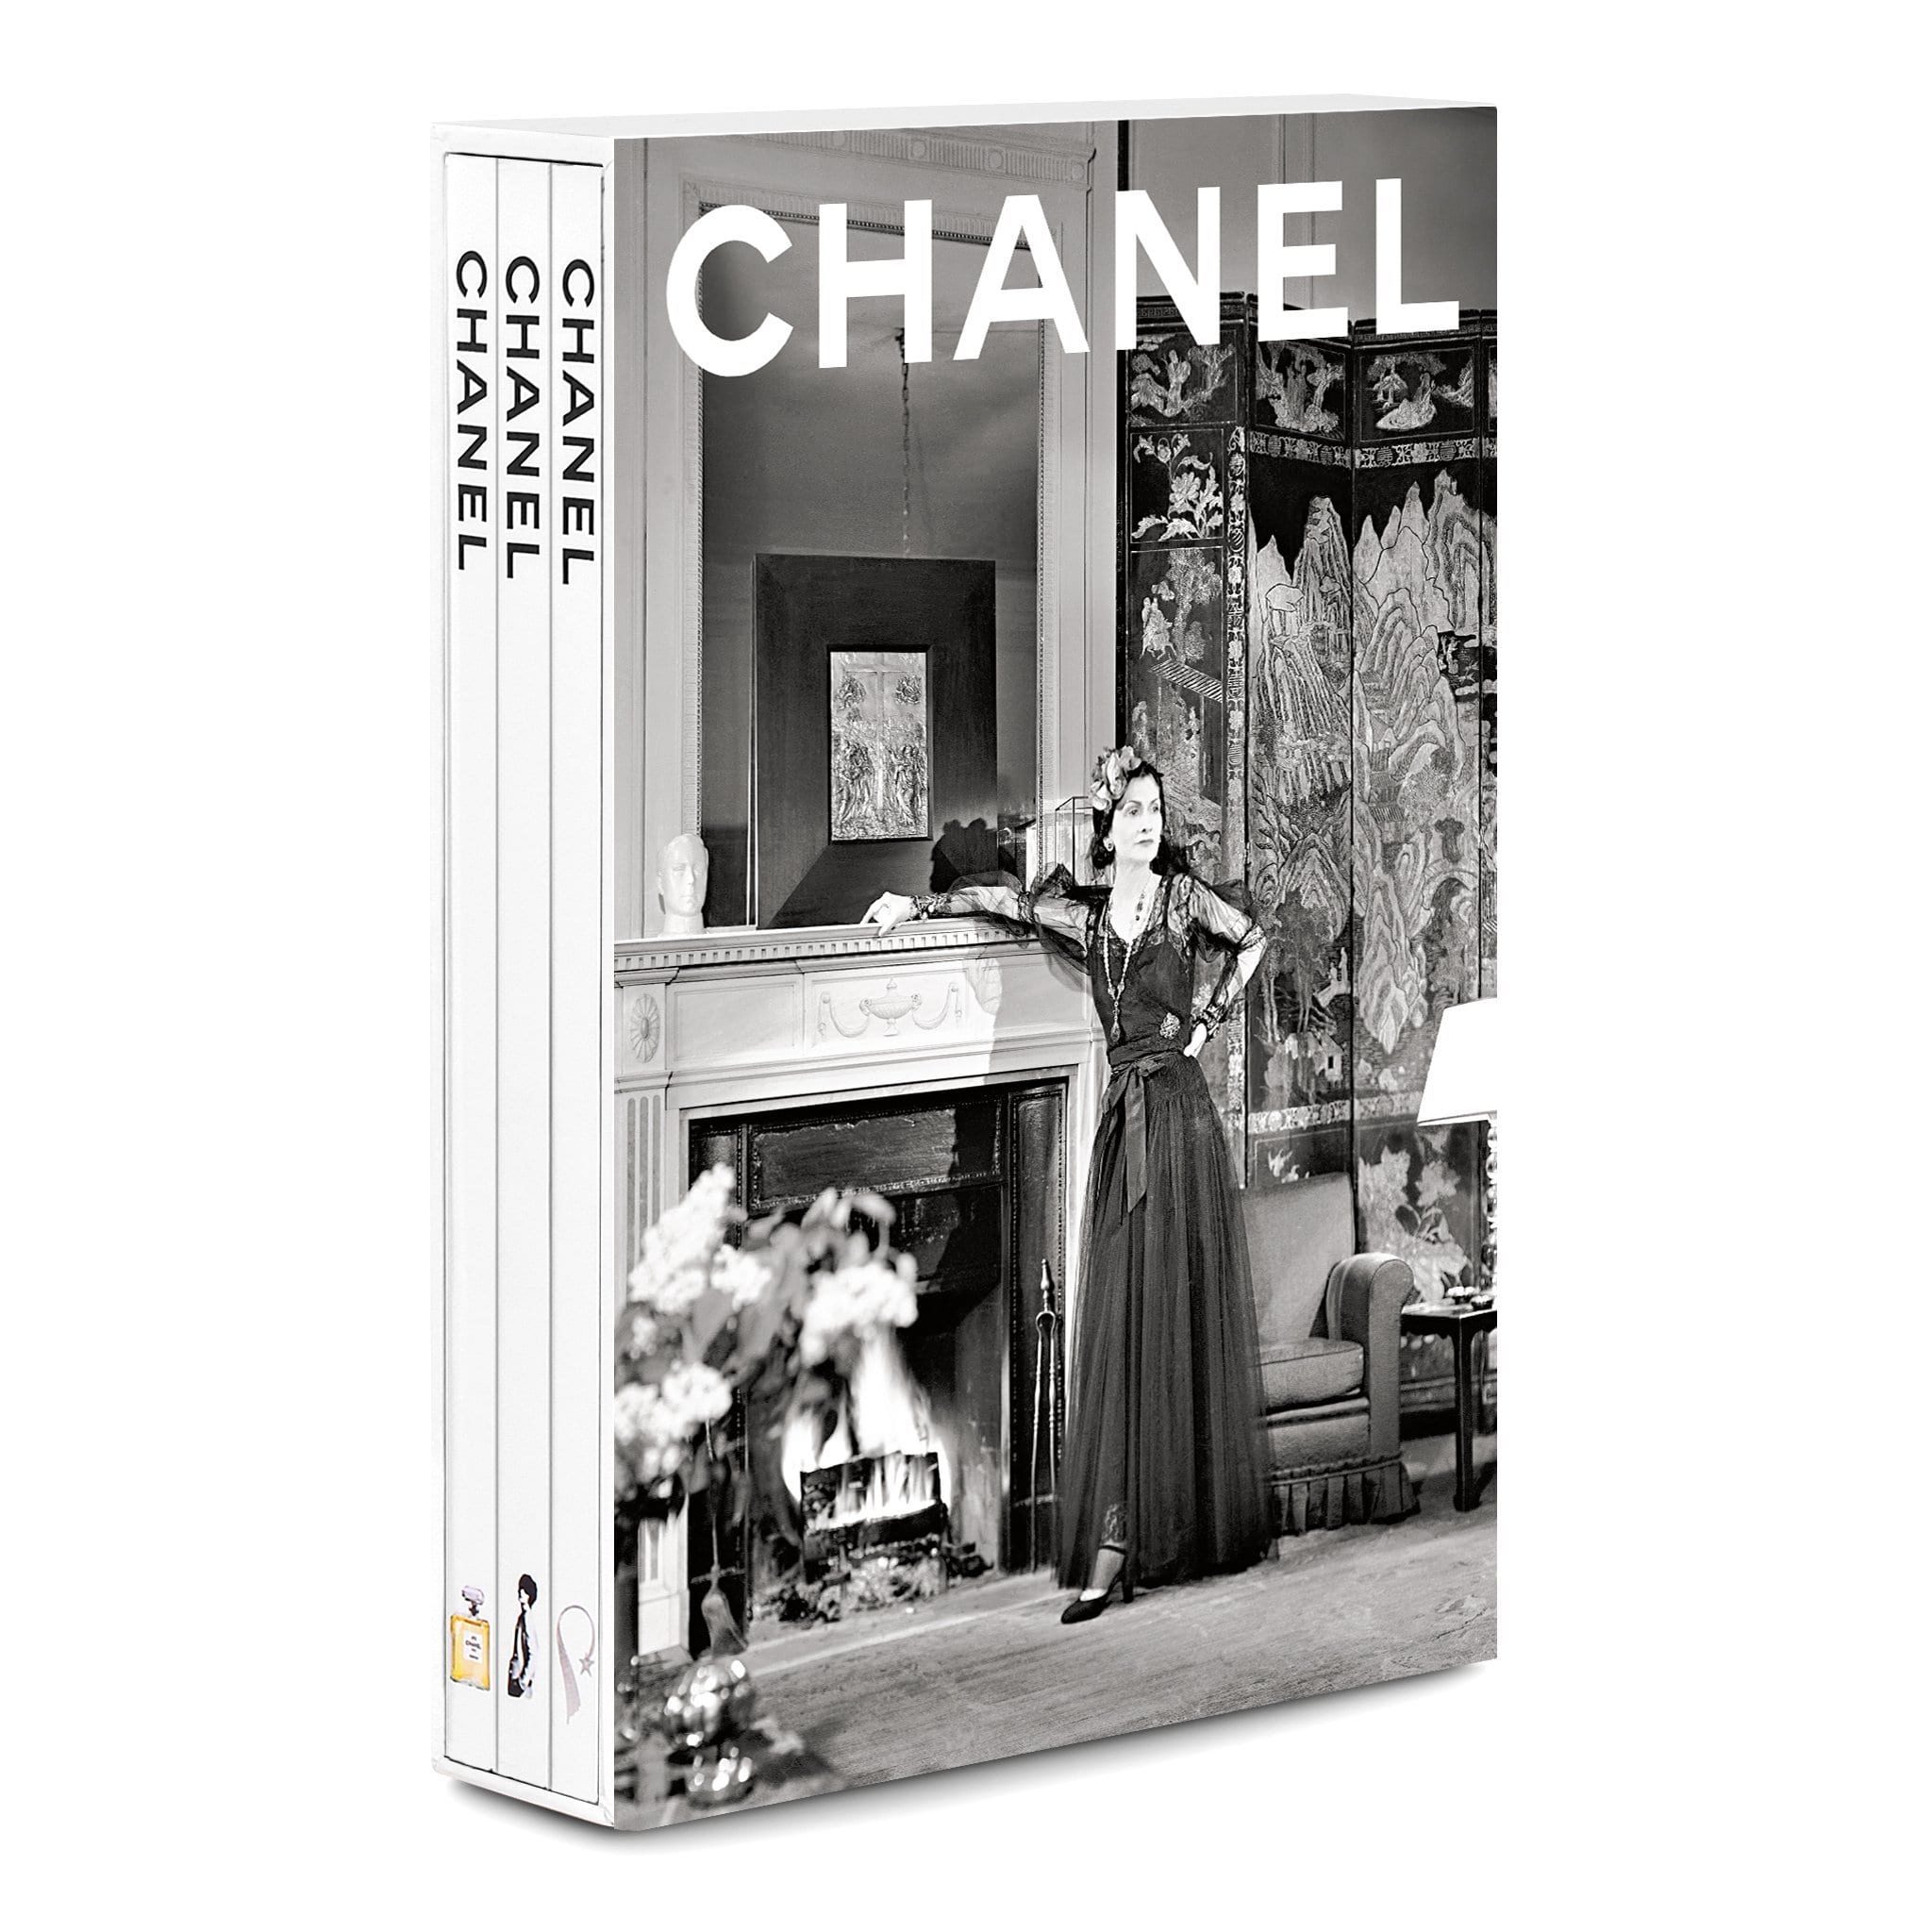 Assouline Chanel 3 Étui à Livres